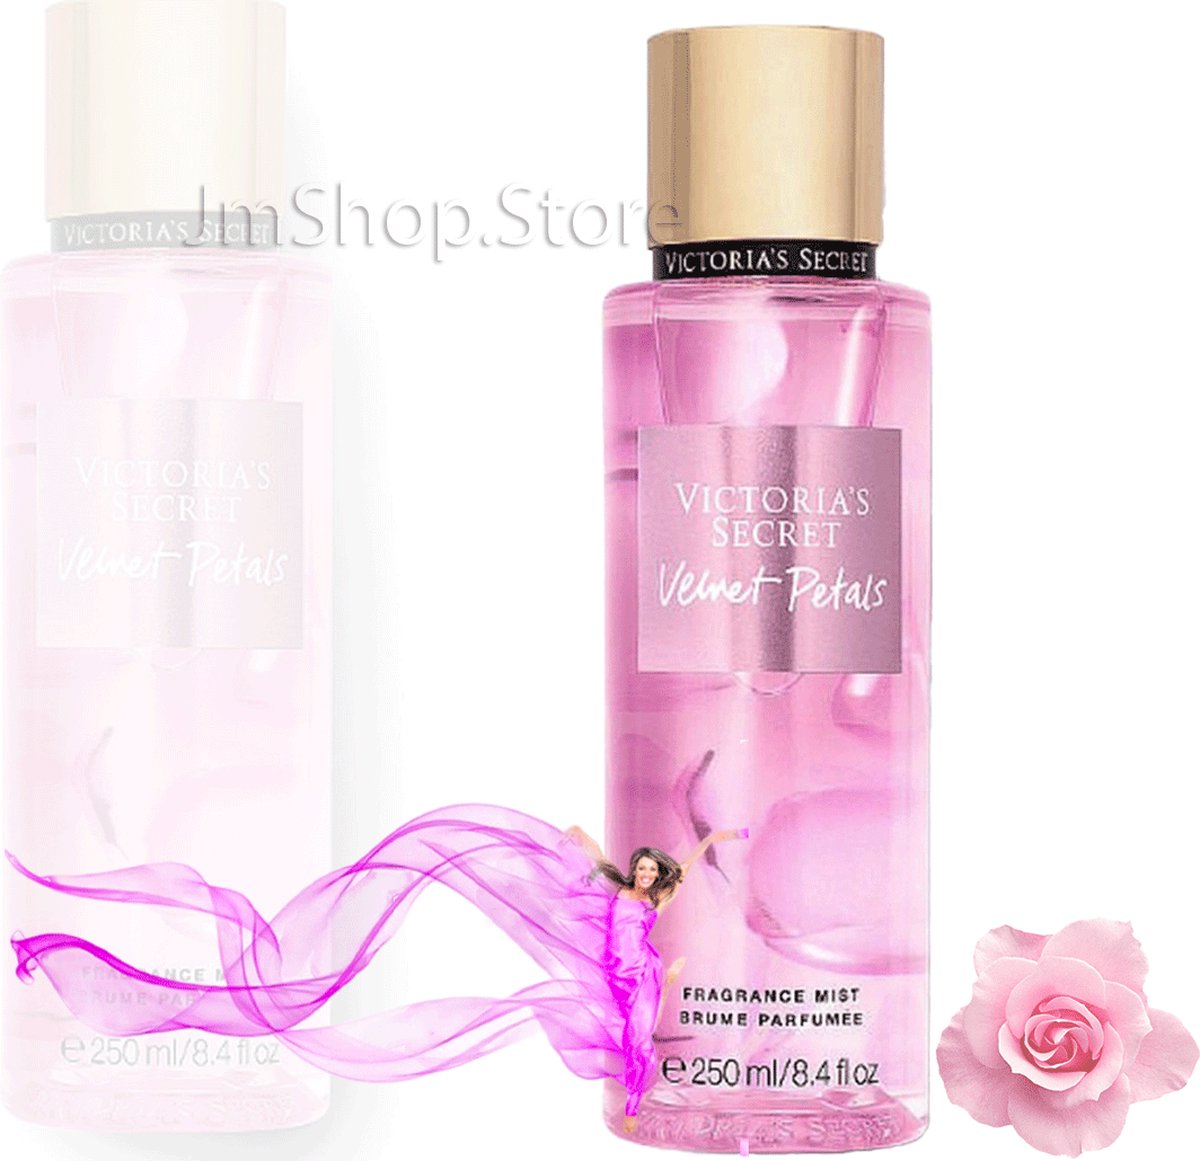 Victoria's Secret - Velvet Petals - Fragrance Body Mist 250 ml